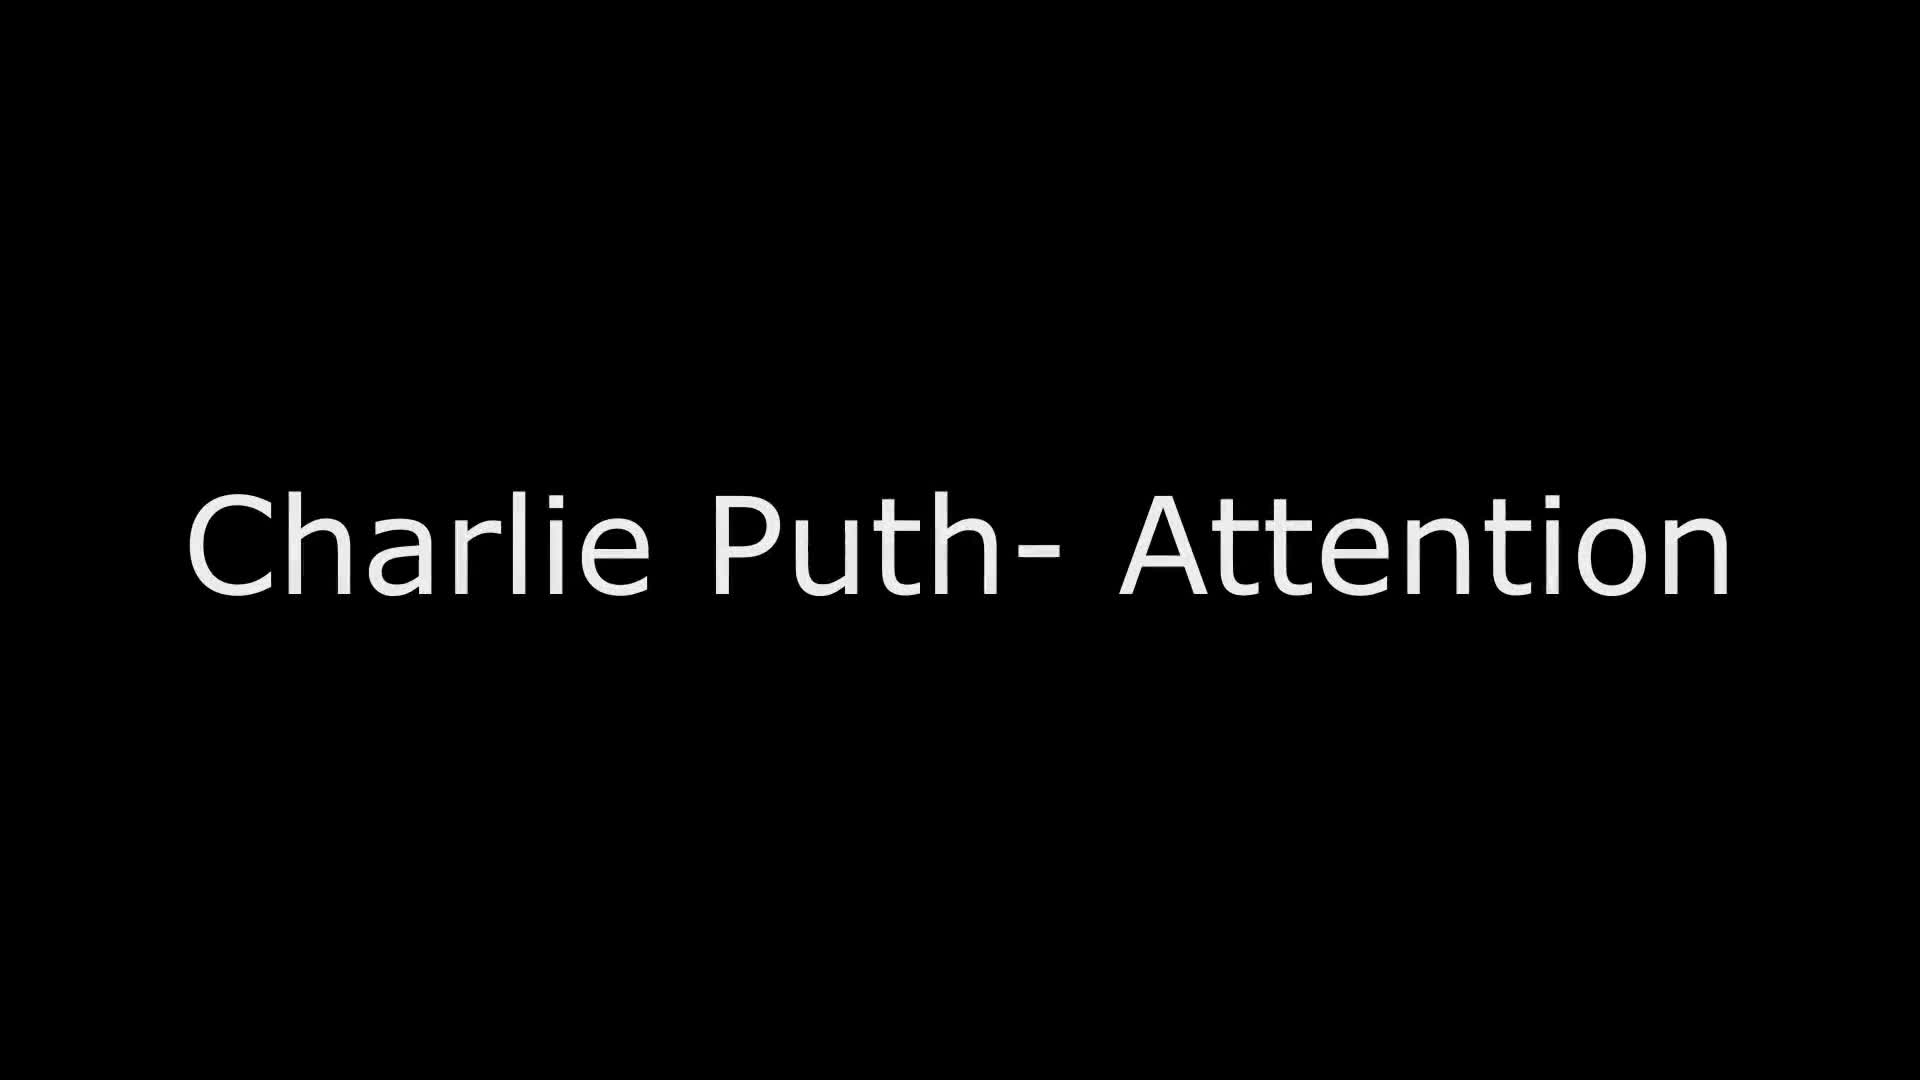 찰리푸스 Charlie Puth – Attention cover dance WAVEYA